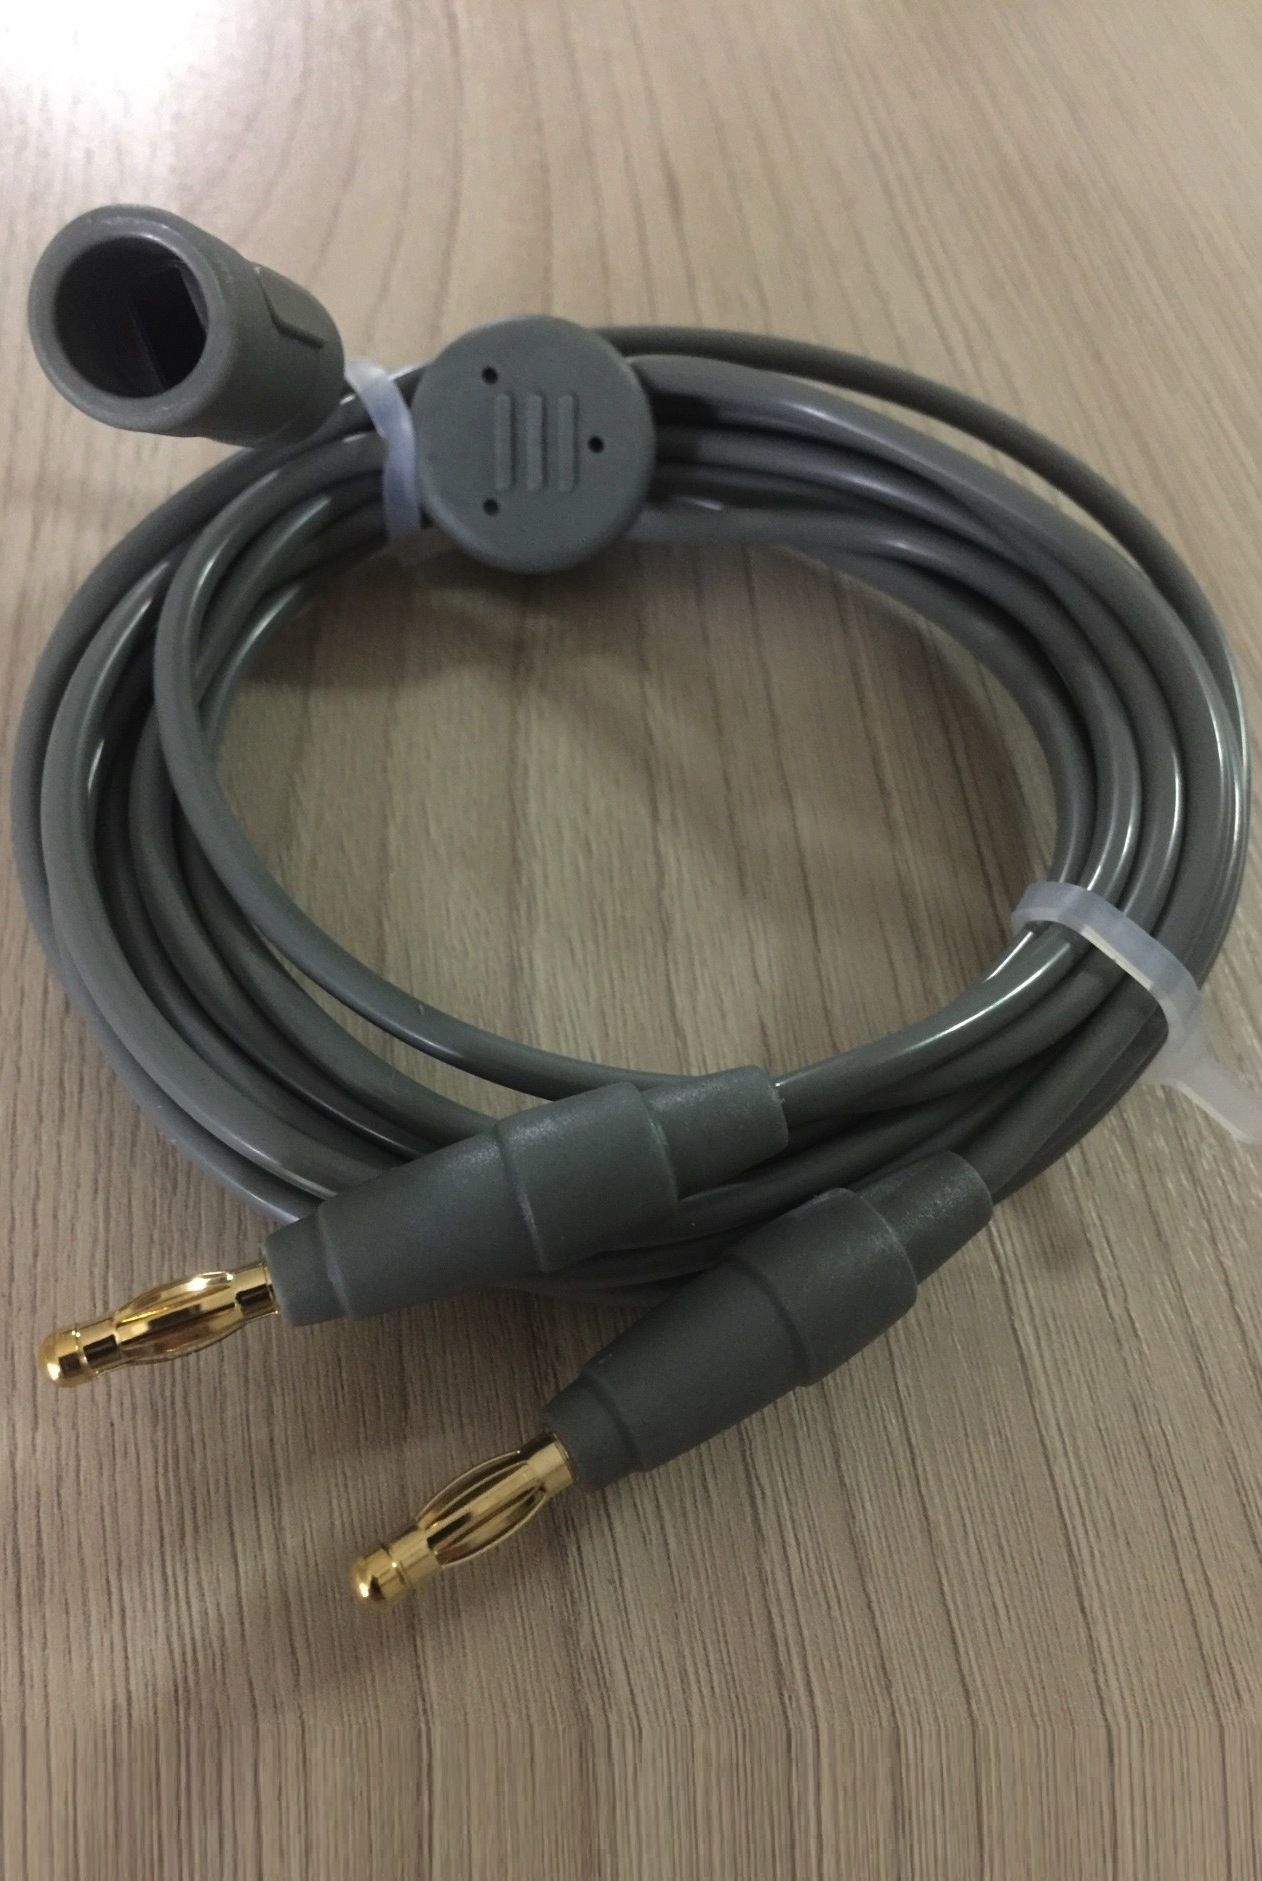 Electrocautery Bipolar Forceps Cable ESU Bipolar cable Euro type_สายด้ามจี้เครื่องจี้ไฟฟ้าแบบไบโพล่าร์ ข้อต่อเสียบด้ามเป็นหลุม แบบมาตรฐานยุโรป 